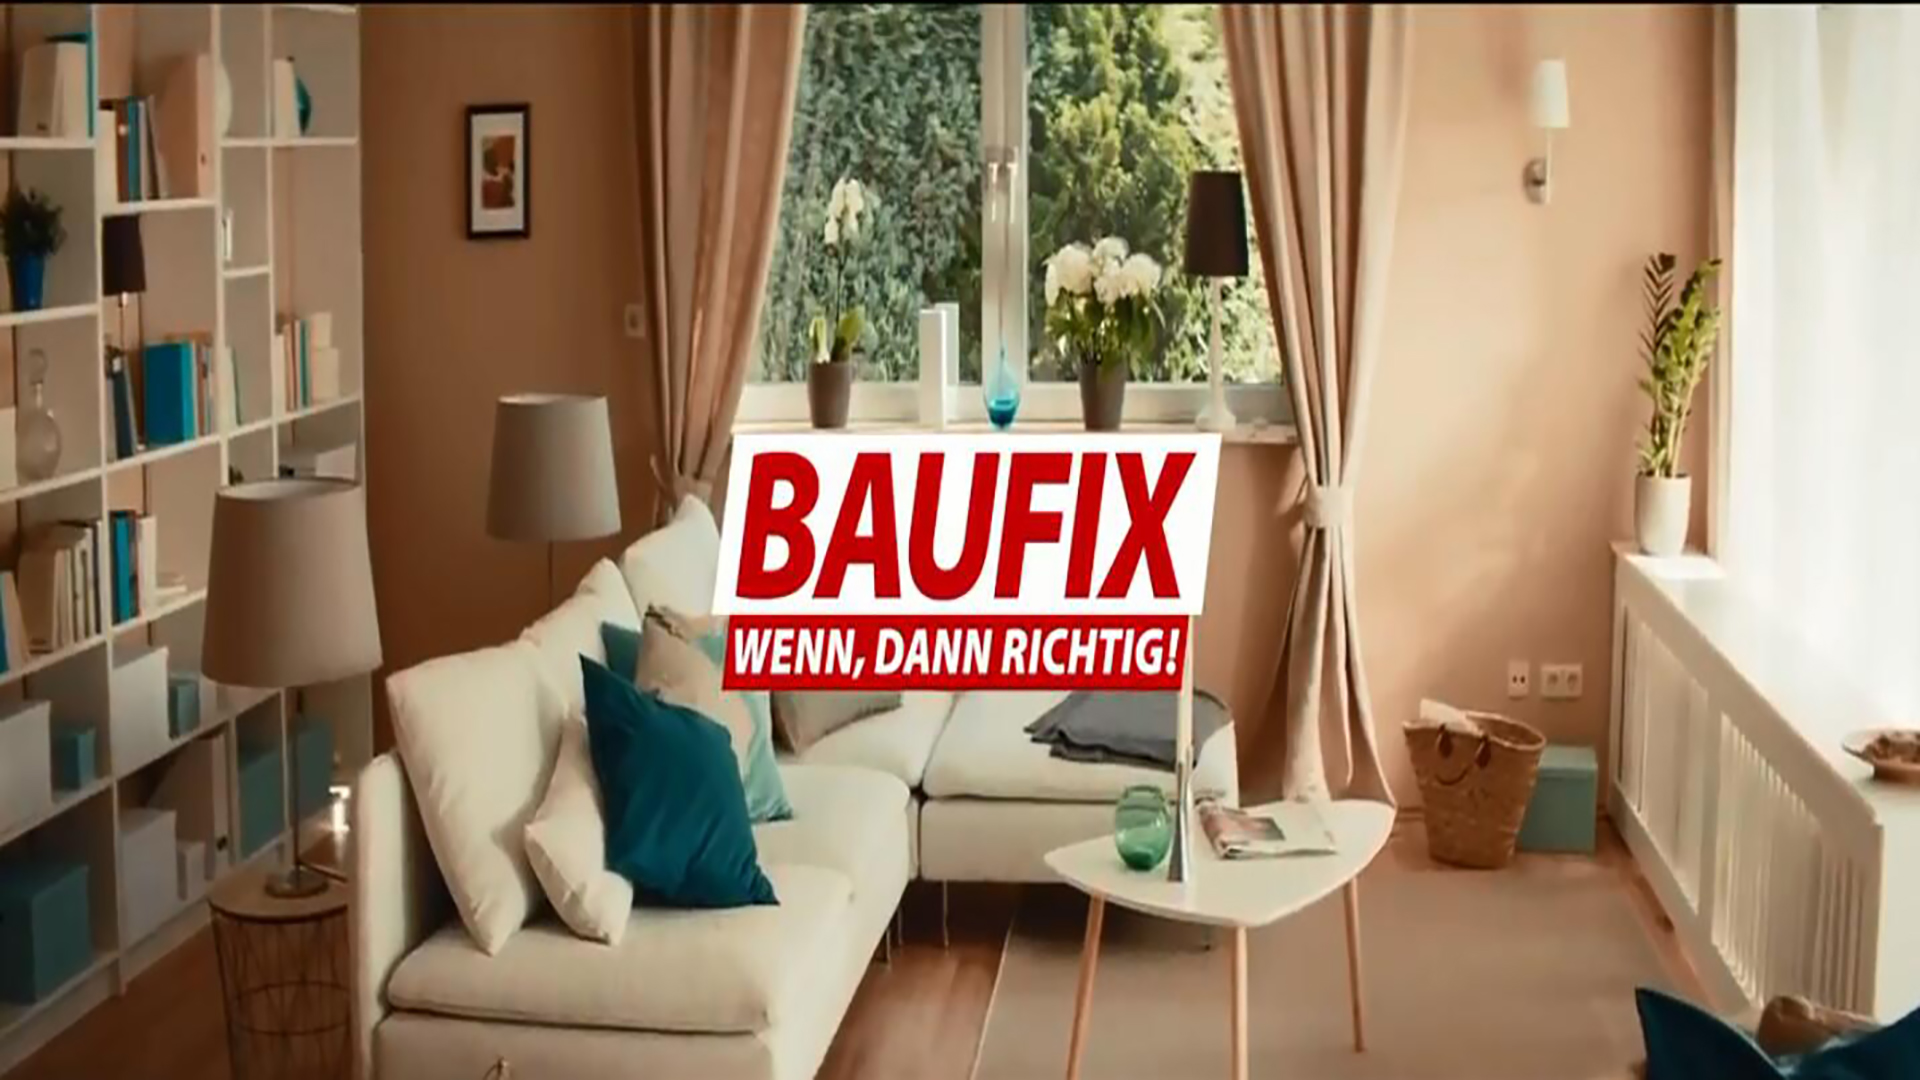 德国BAUFIX品牌涂料广告创意